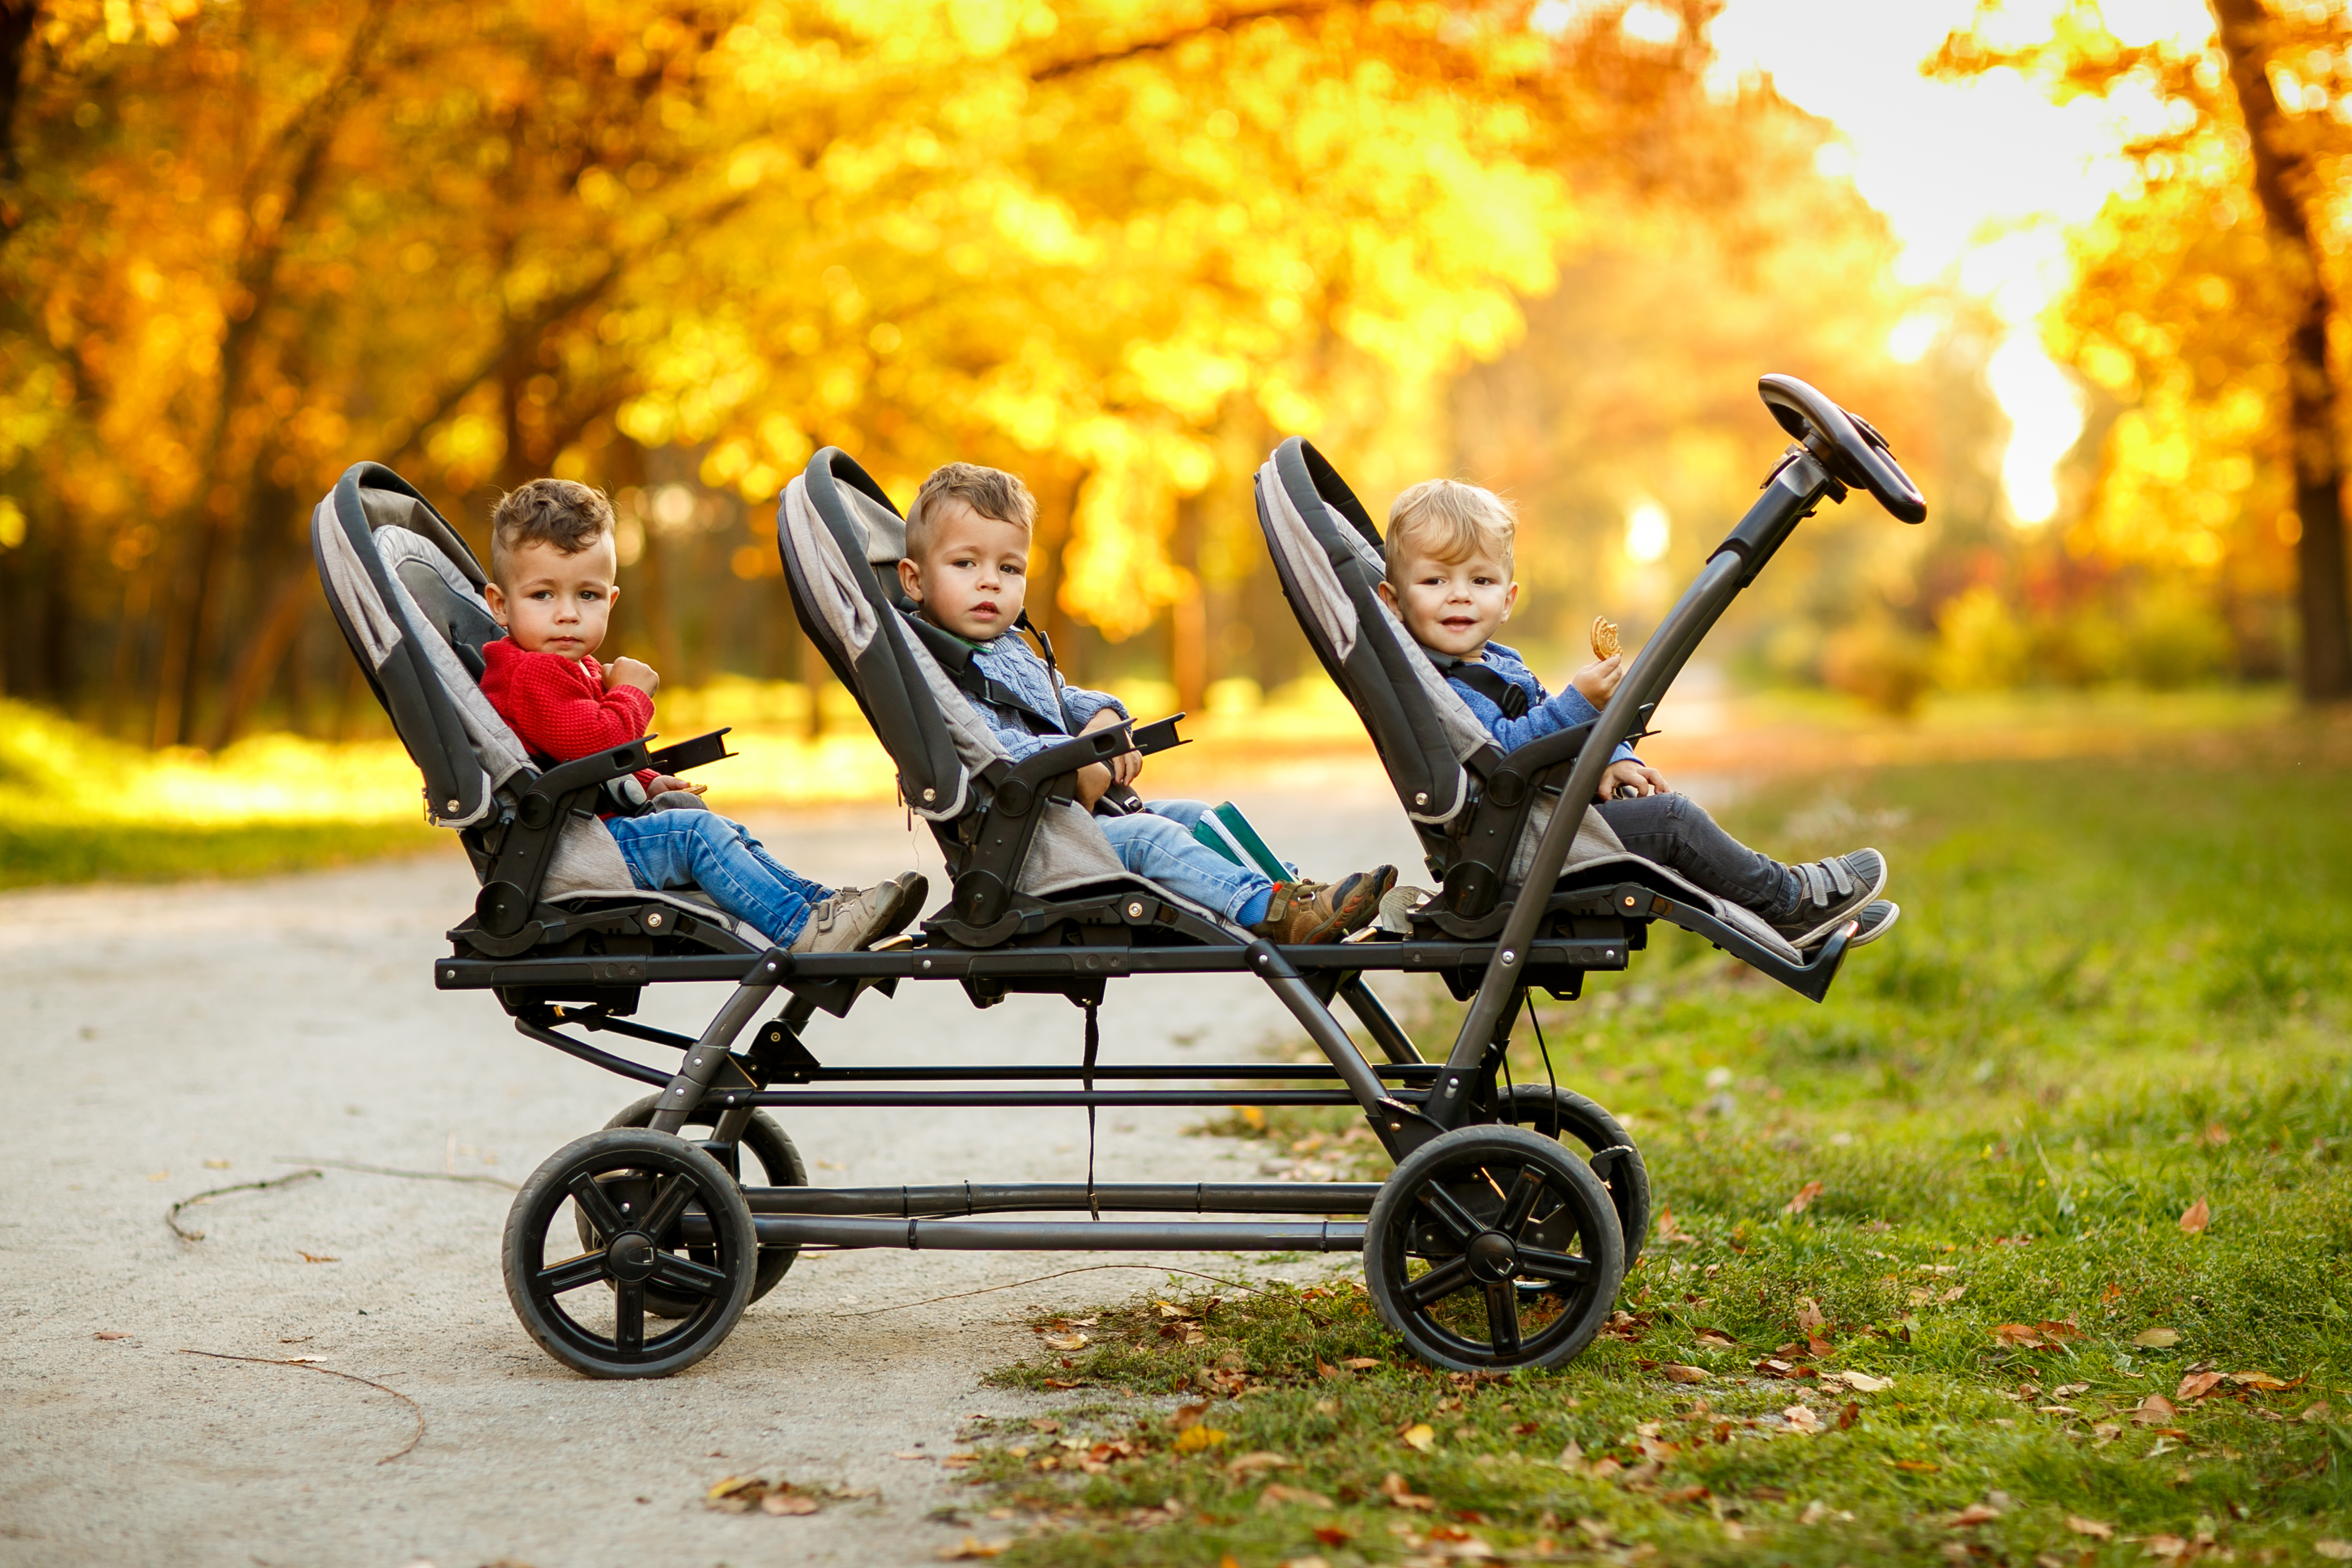 Triplets in stroller | Source: Shutterstock